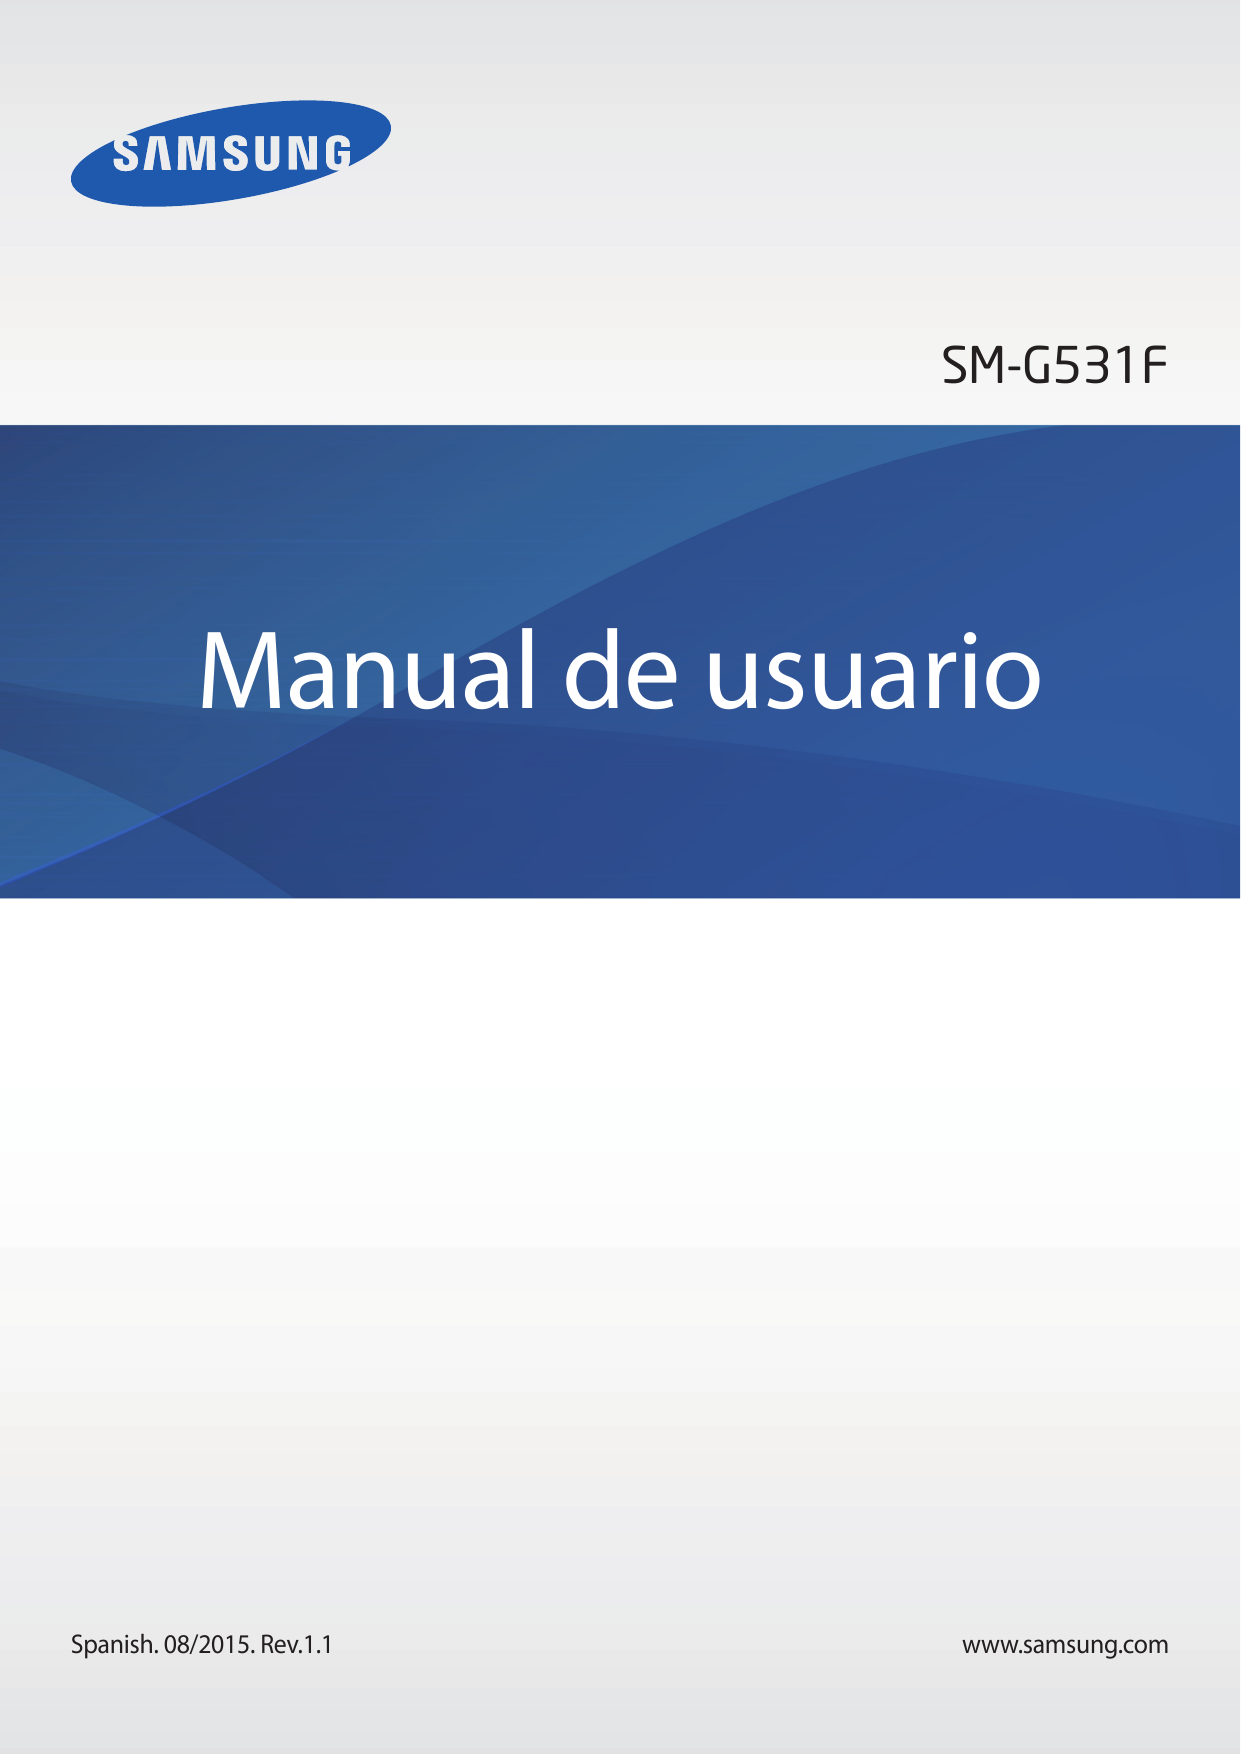 SM-G531FManual de usuarioSpanish. 08/2015. Rev.1.1www.samsung.com